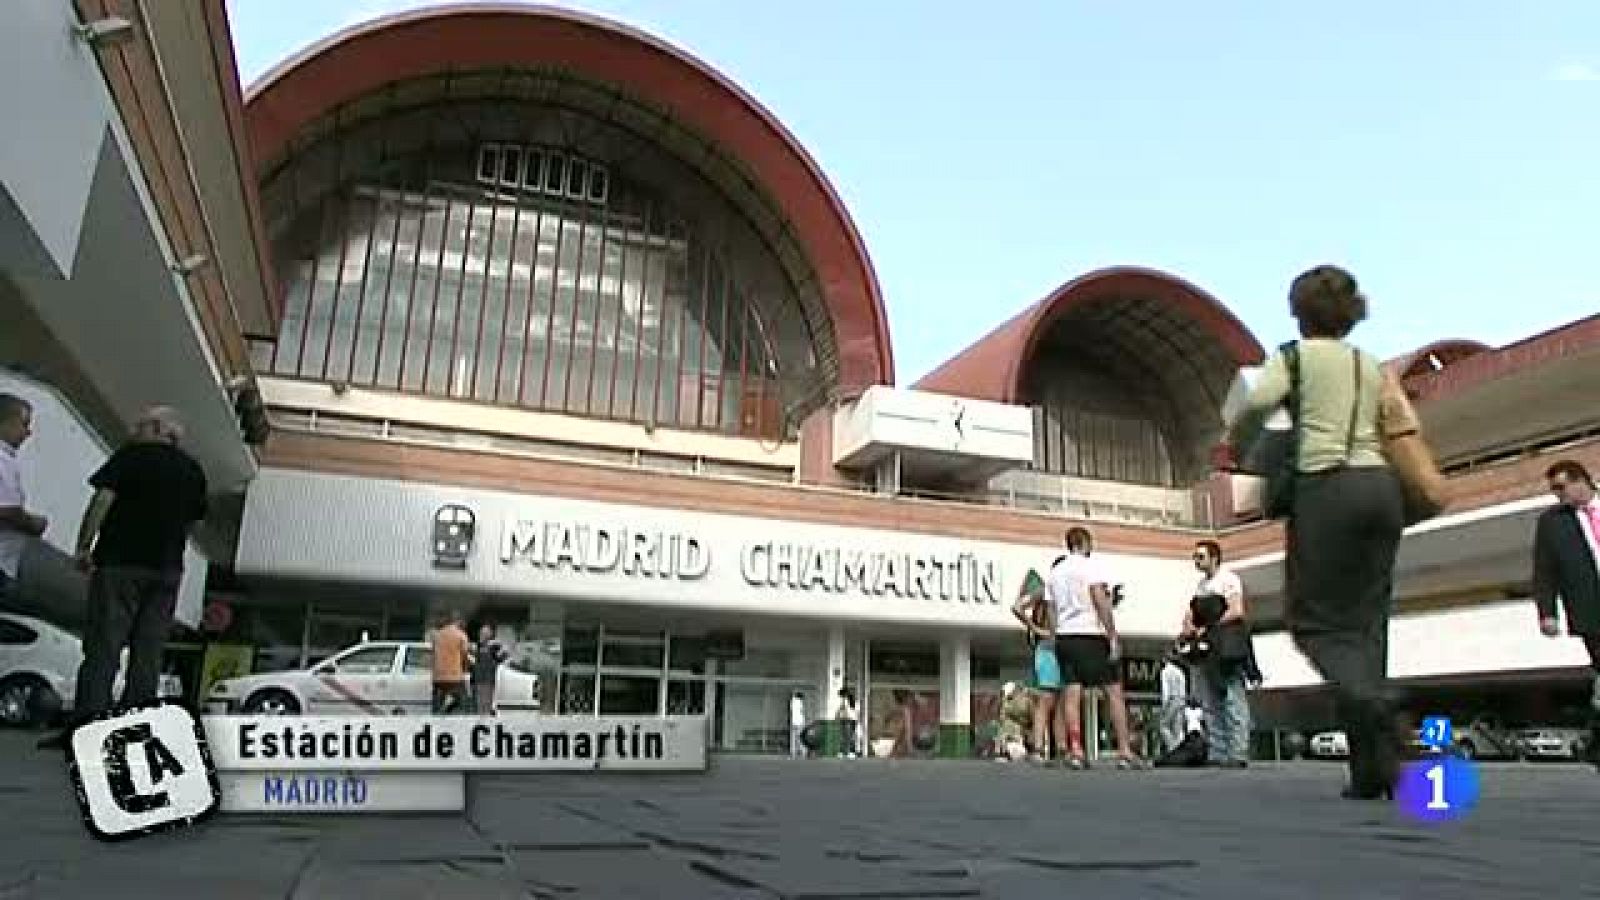 Comando actualidad - A todo tren - Madrid Paris